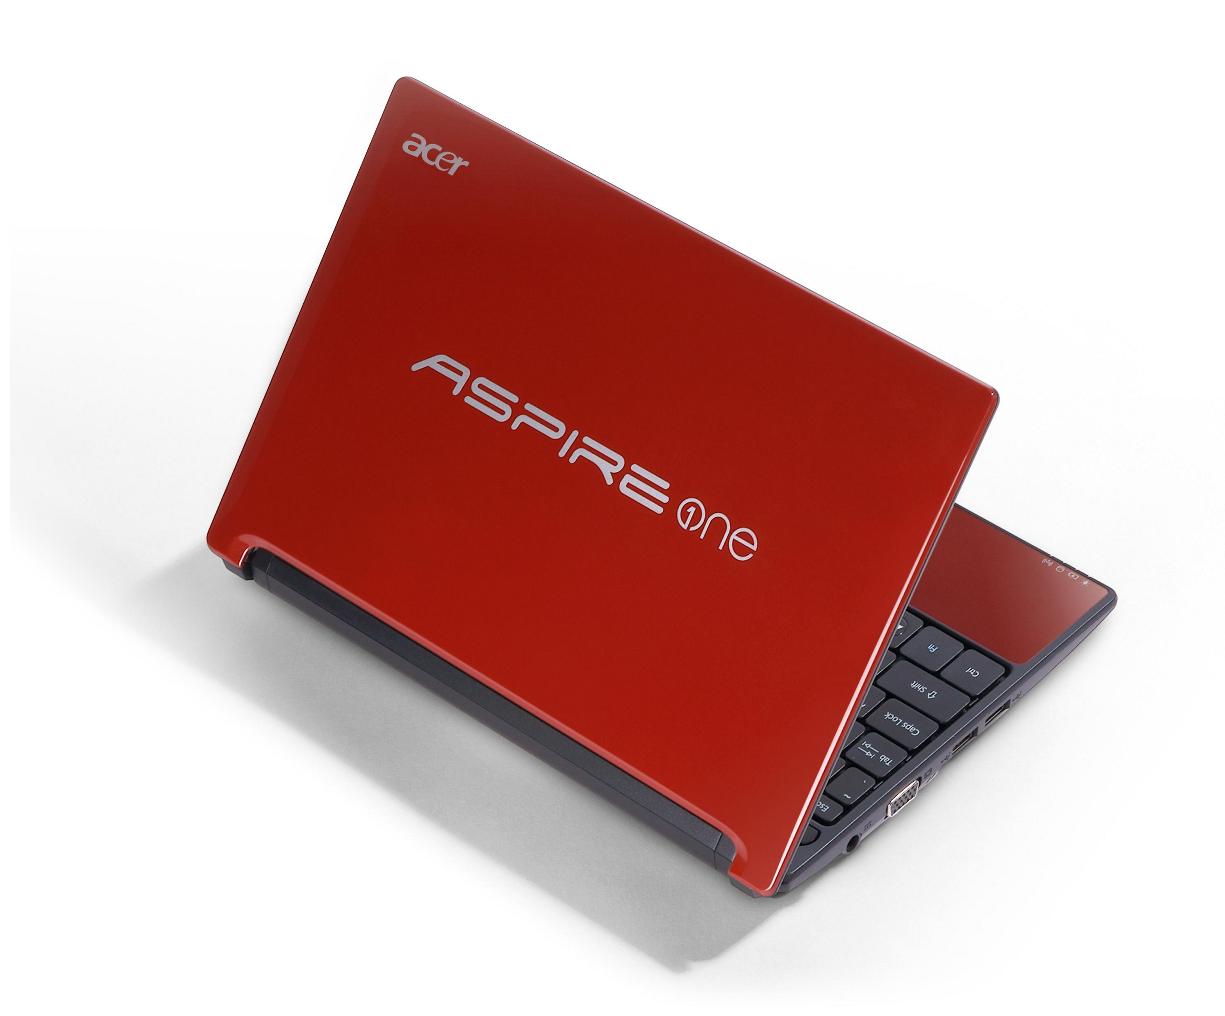 En ince ve en hafif mini dizüstü bilgisayar:Aspire One D255 - Technopat